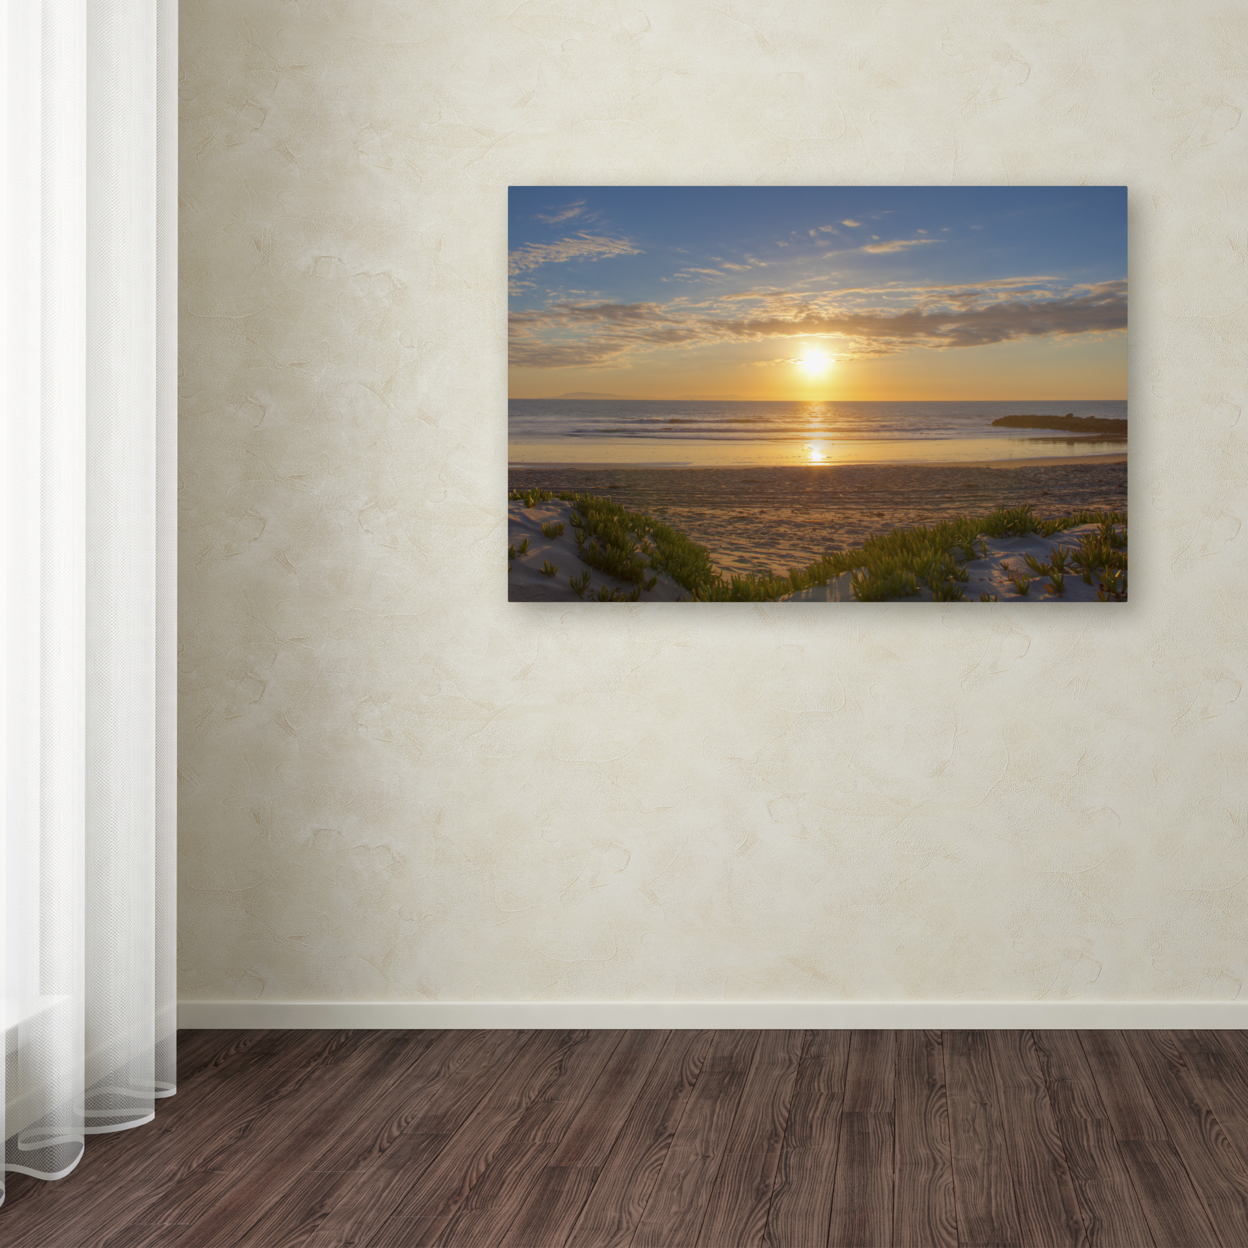 Chris Moyer 'Pierpont Sunset' Canvas Art 16 X 24